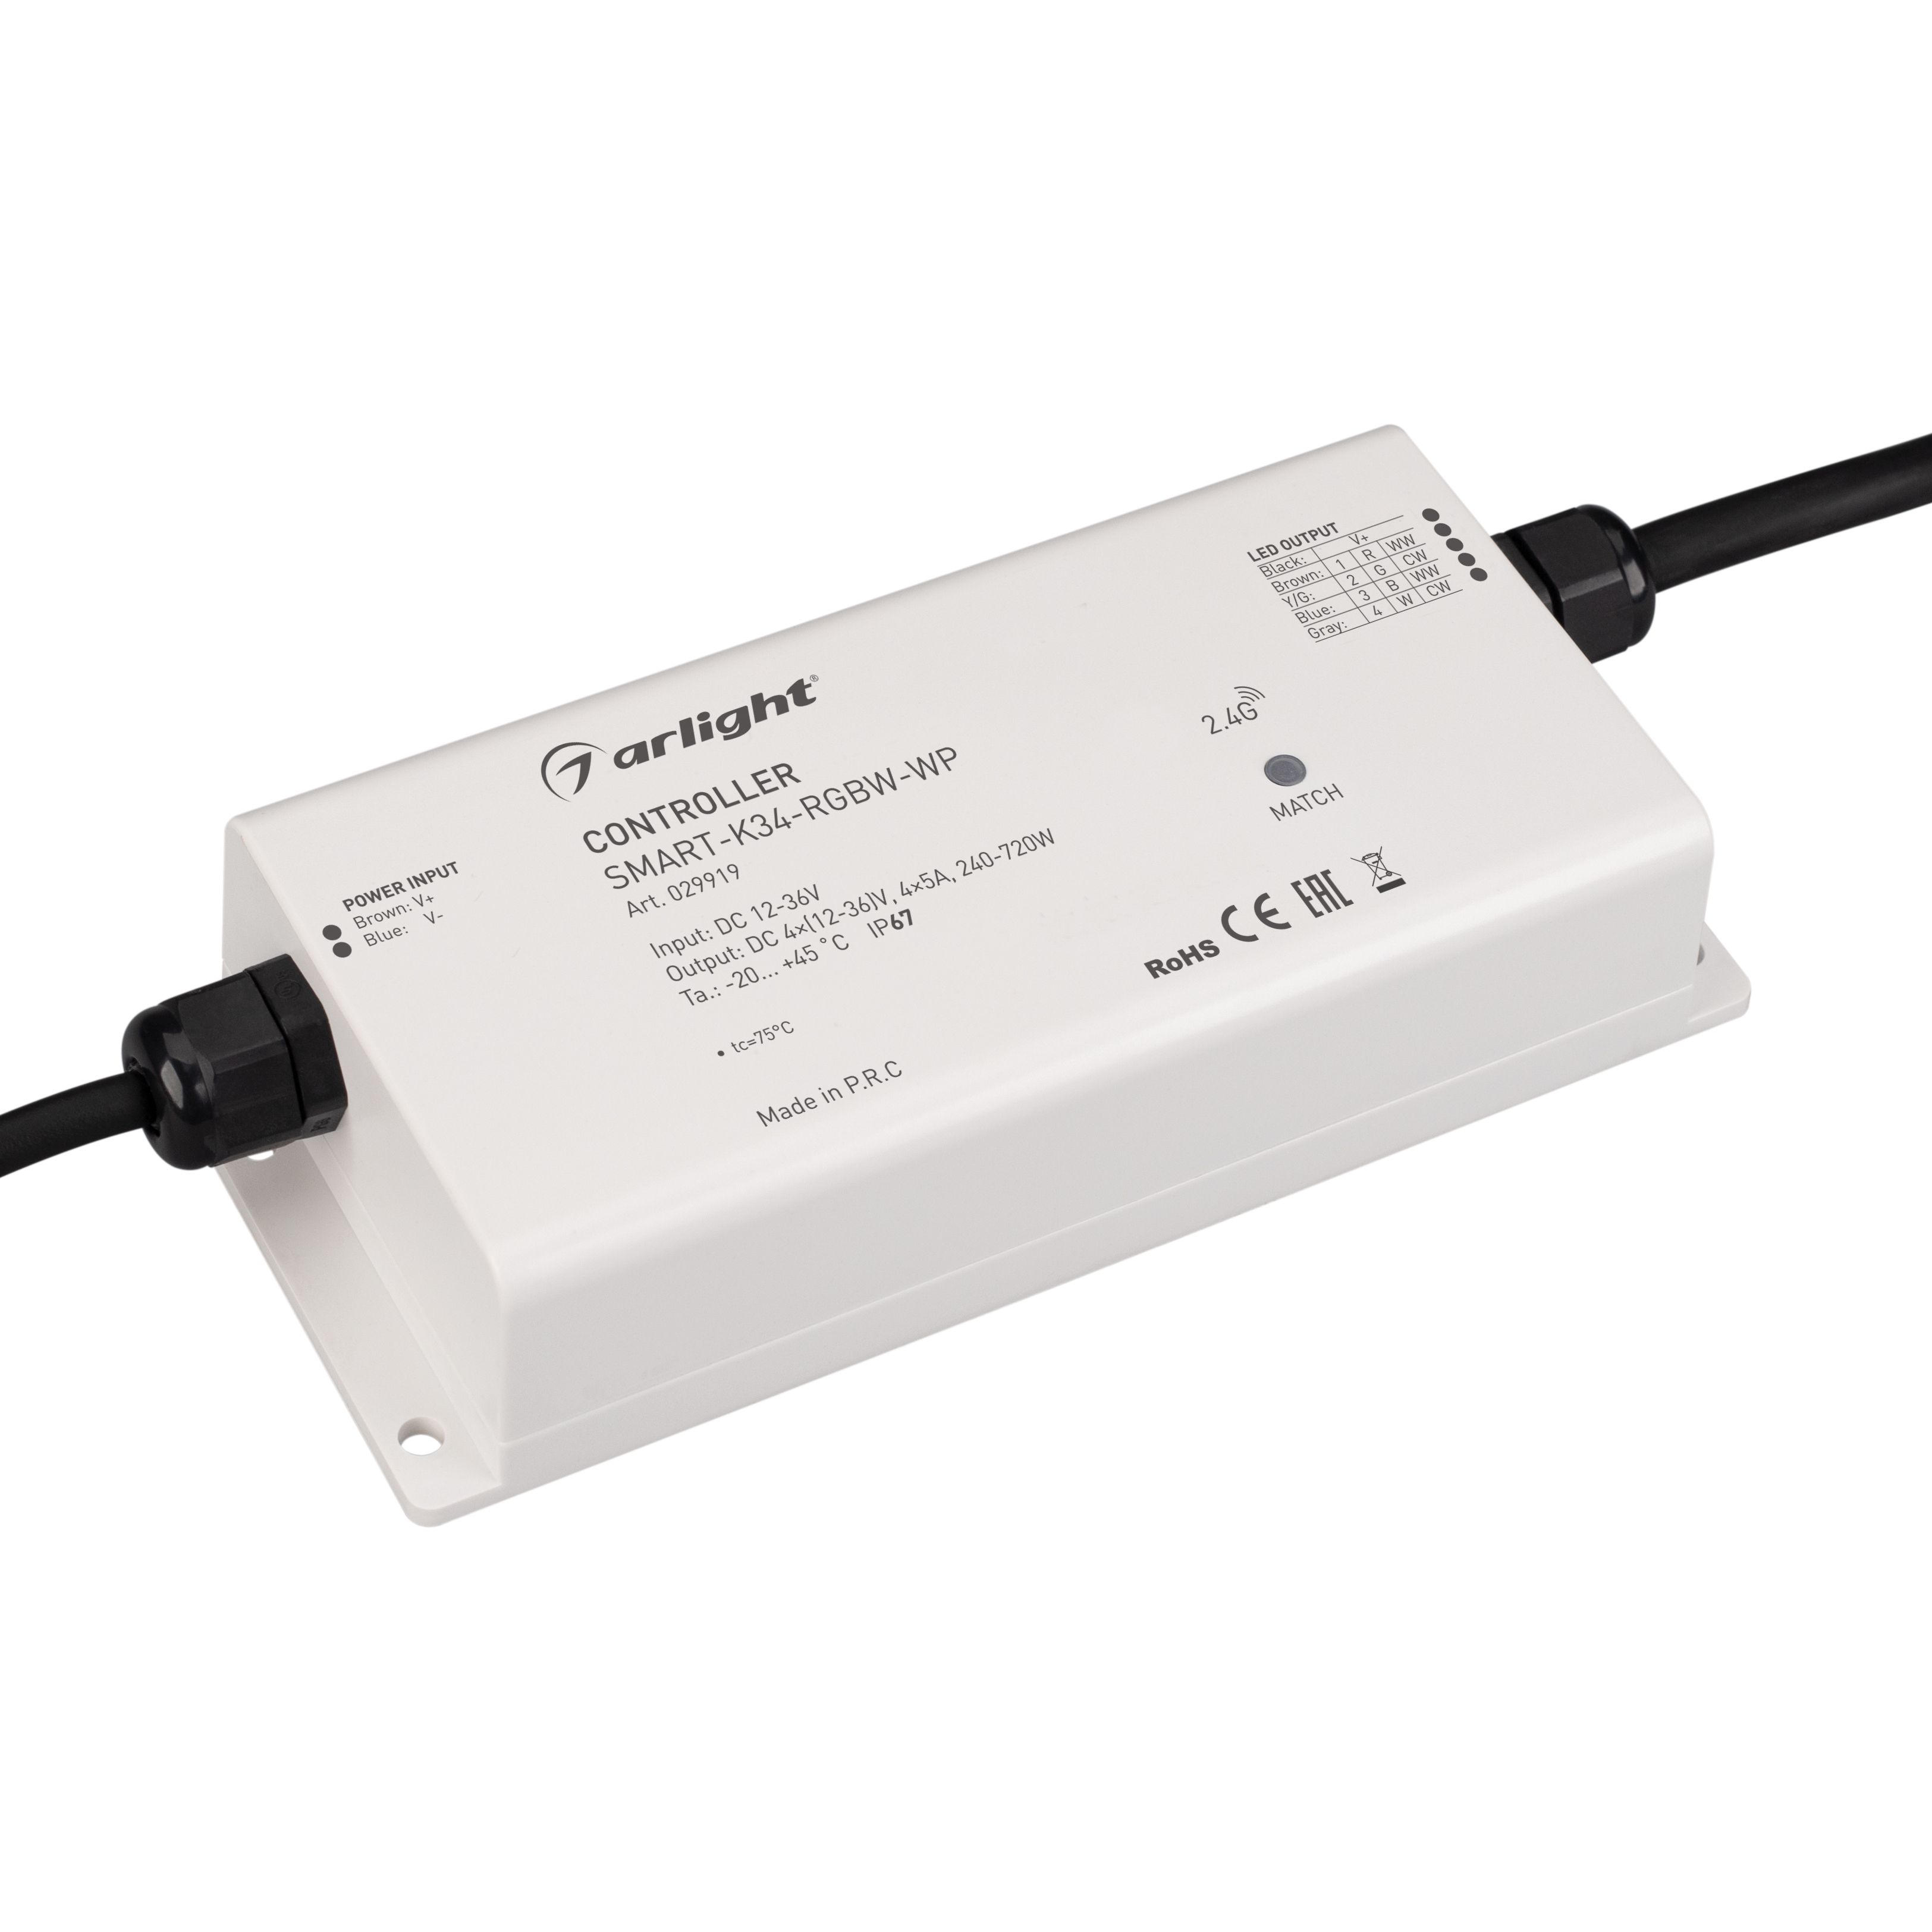 Контроллер SMART-K34-RGBW-WP (12-36V, 4x5A, 2.4G) (Arlight, IP67 Пластик, 5 лет) контроллер для светодиодной ленты rgbw mix 180вт 360вт 01123